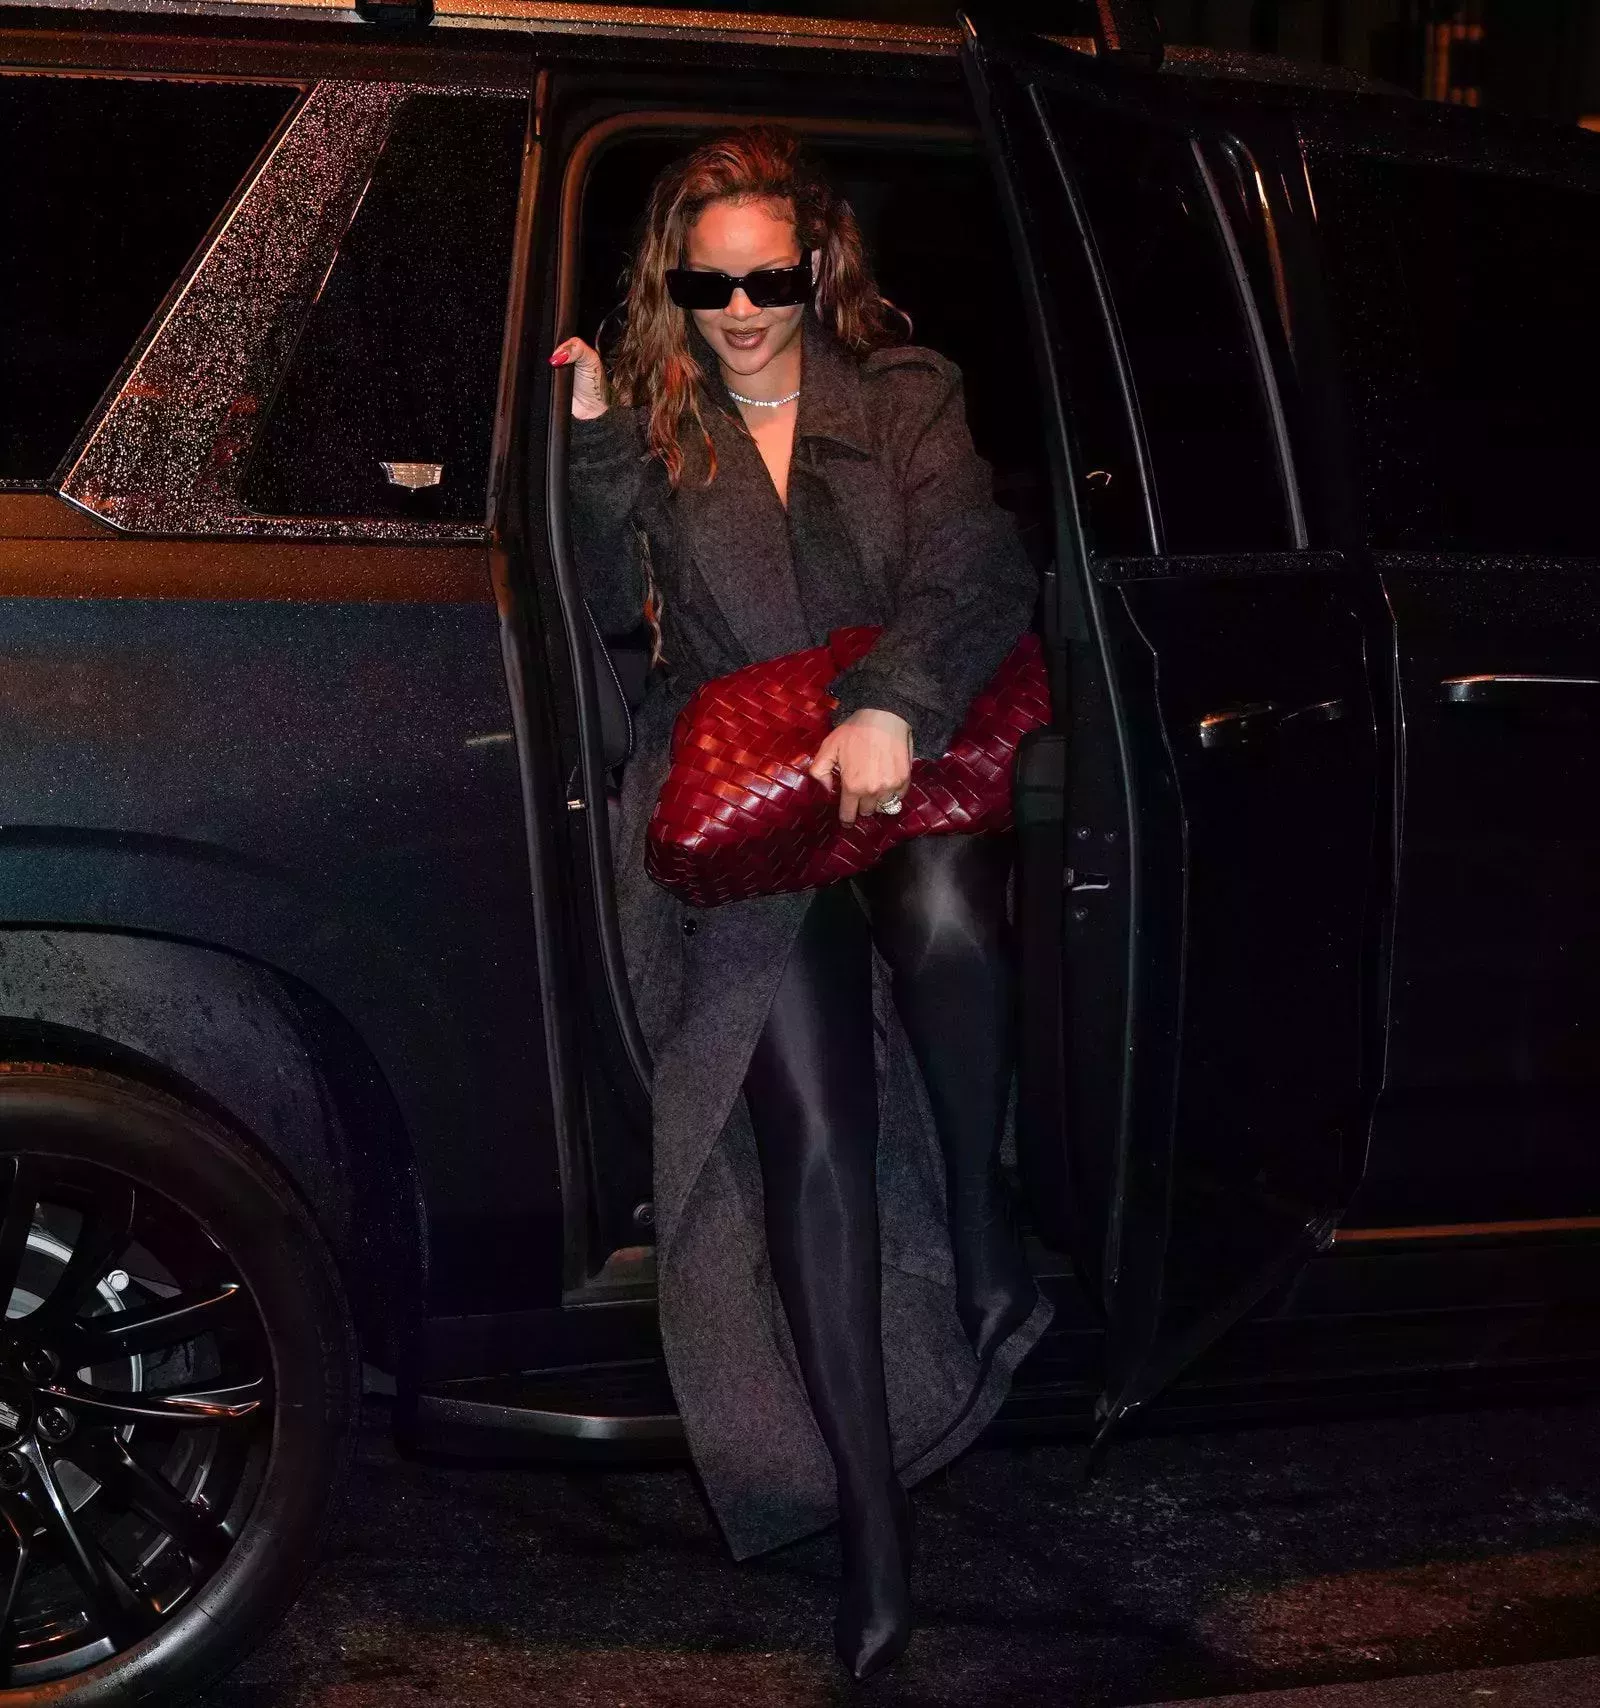 El clutch de Rihanna es tan grande que ¿se puede considerar un clutch?